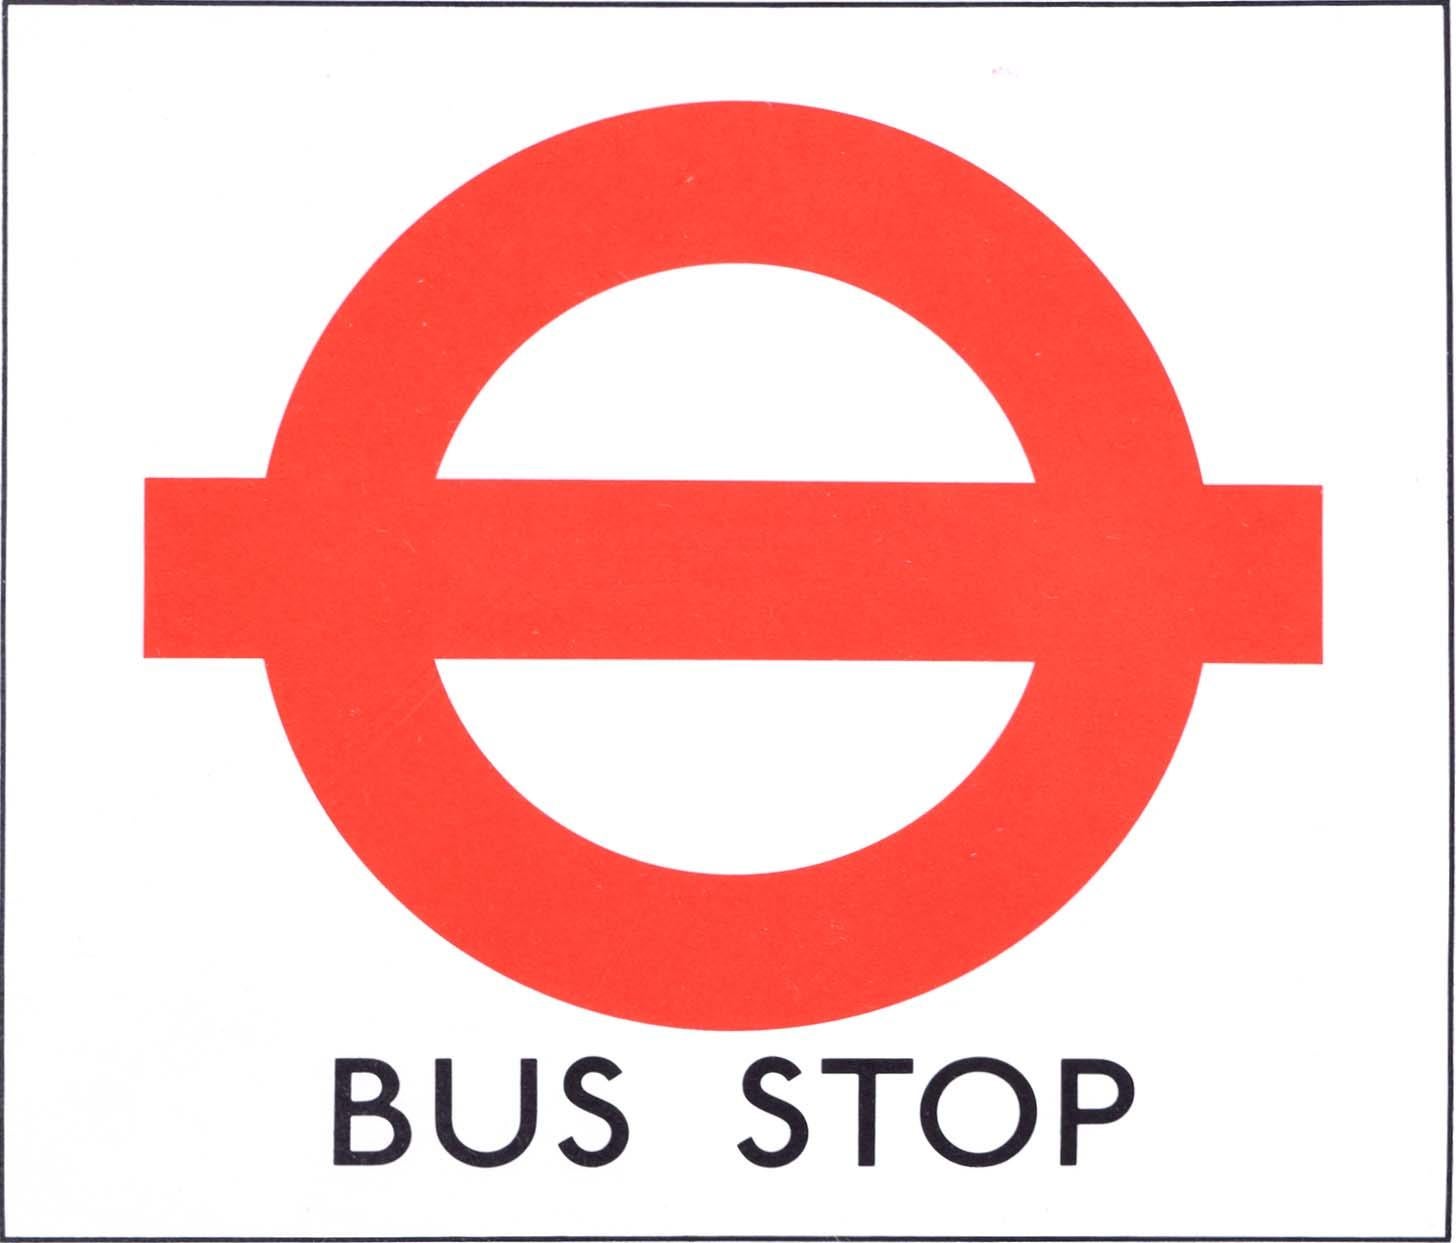 Hans Schleger 'Zero' London Transport Bus Stop c. 1970 Original Poster